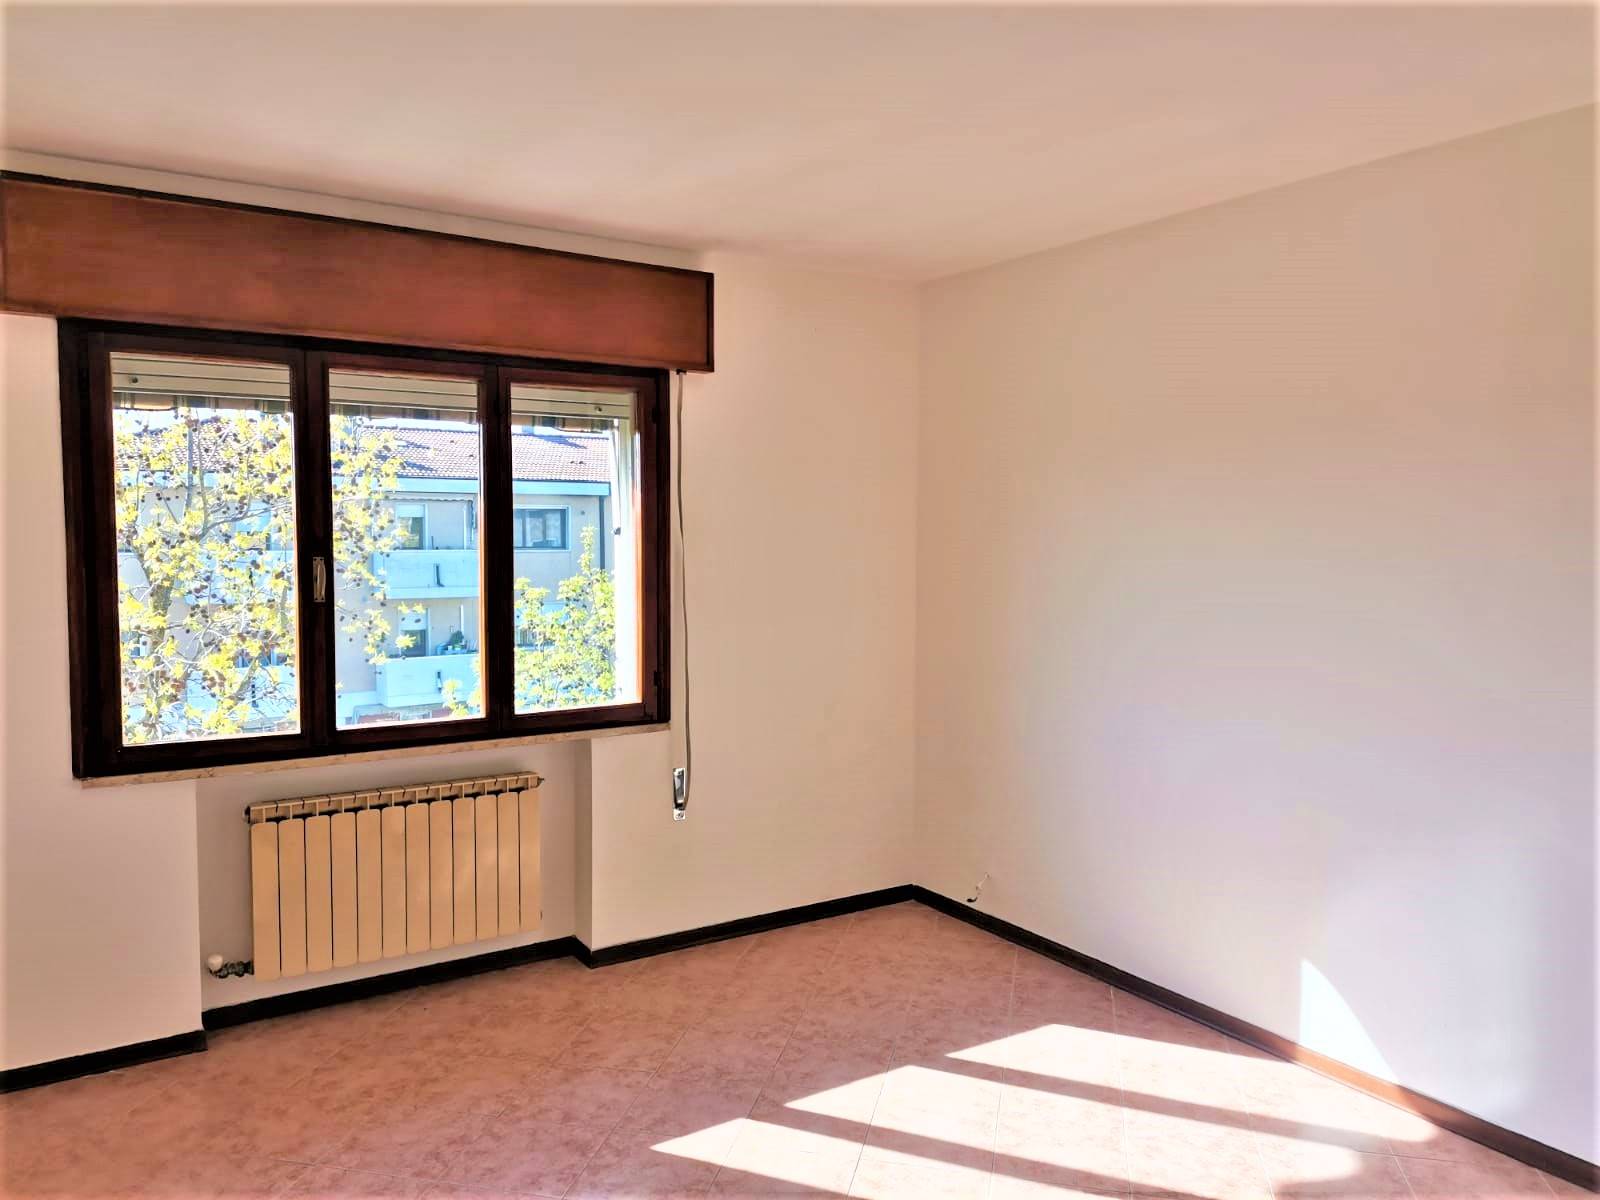 Appartamento in vendita a Mirano, 5 locali, zona Località: VIA GRAMSCI, prezzo € 185.000 | PortaleAgenzieImmobiliari.it